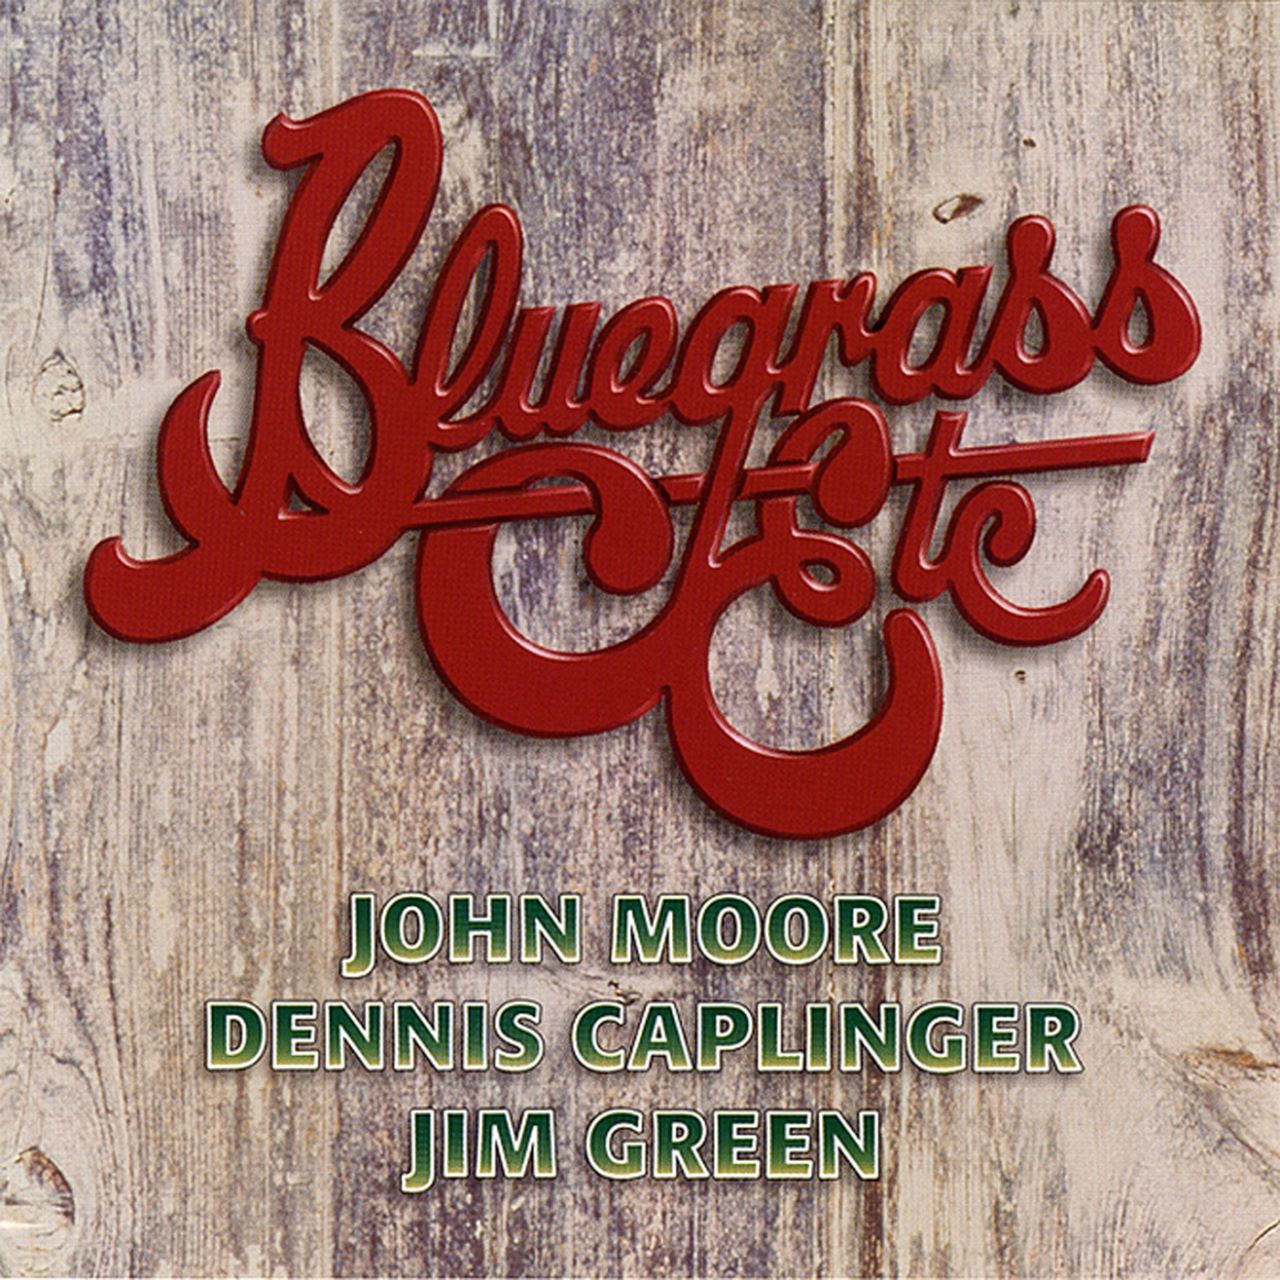 Bluegrass Etc. - Bluegrass Etc. cover album